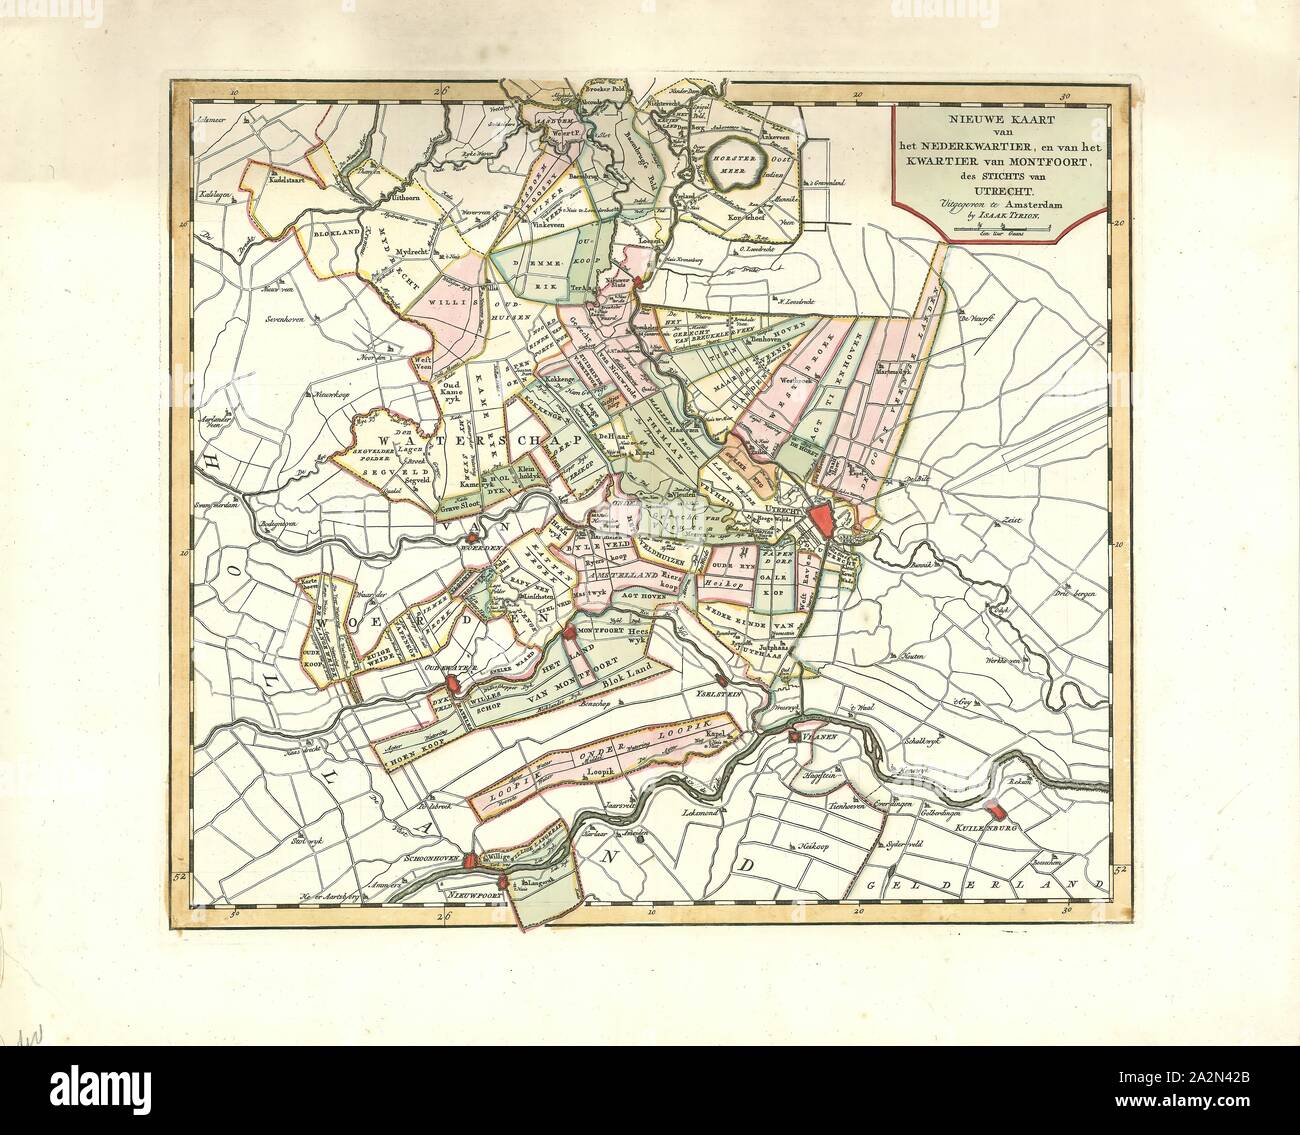 Map, Nieuwe kaart van het Nederkwartier, en van het kwartier van Montfoort, des Stichts van Utrecht, Copperplate print Stock Photo